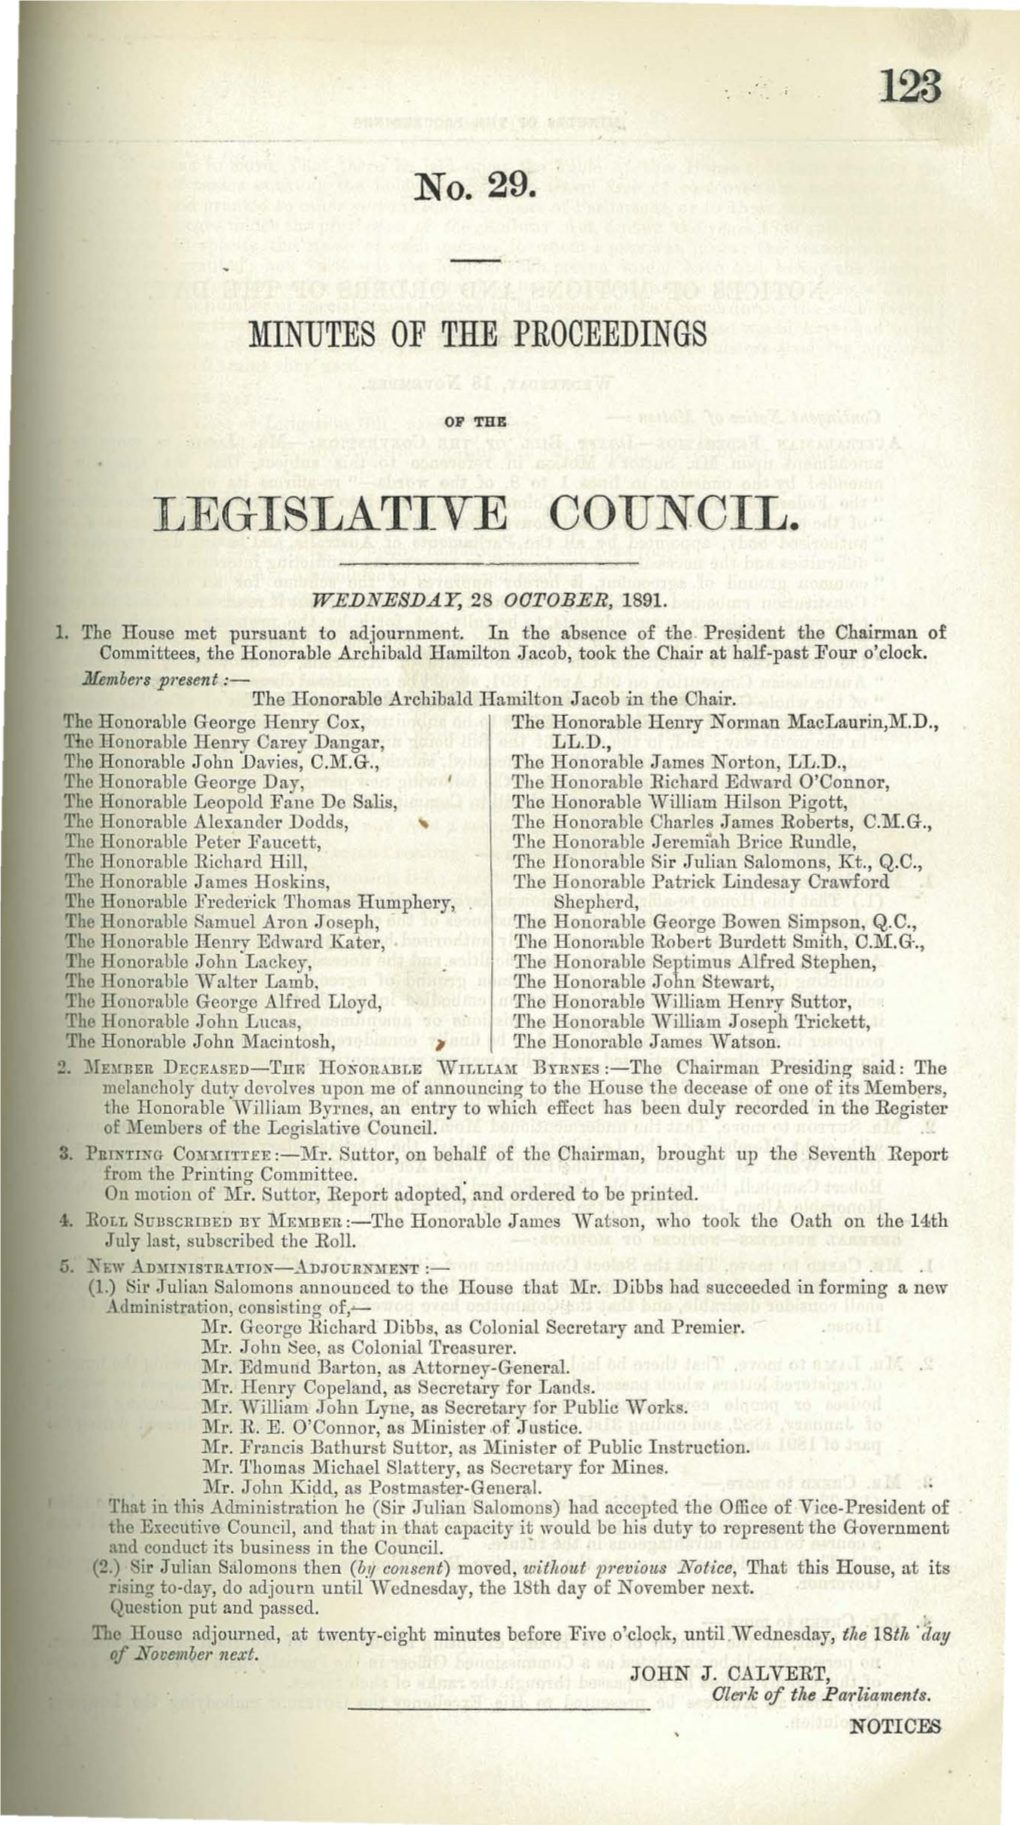 123 Legislative Council